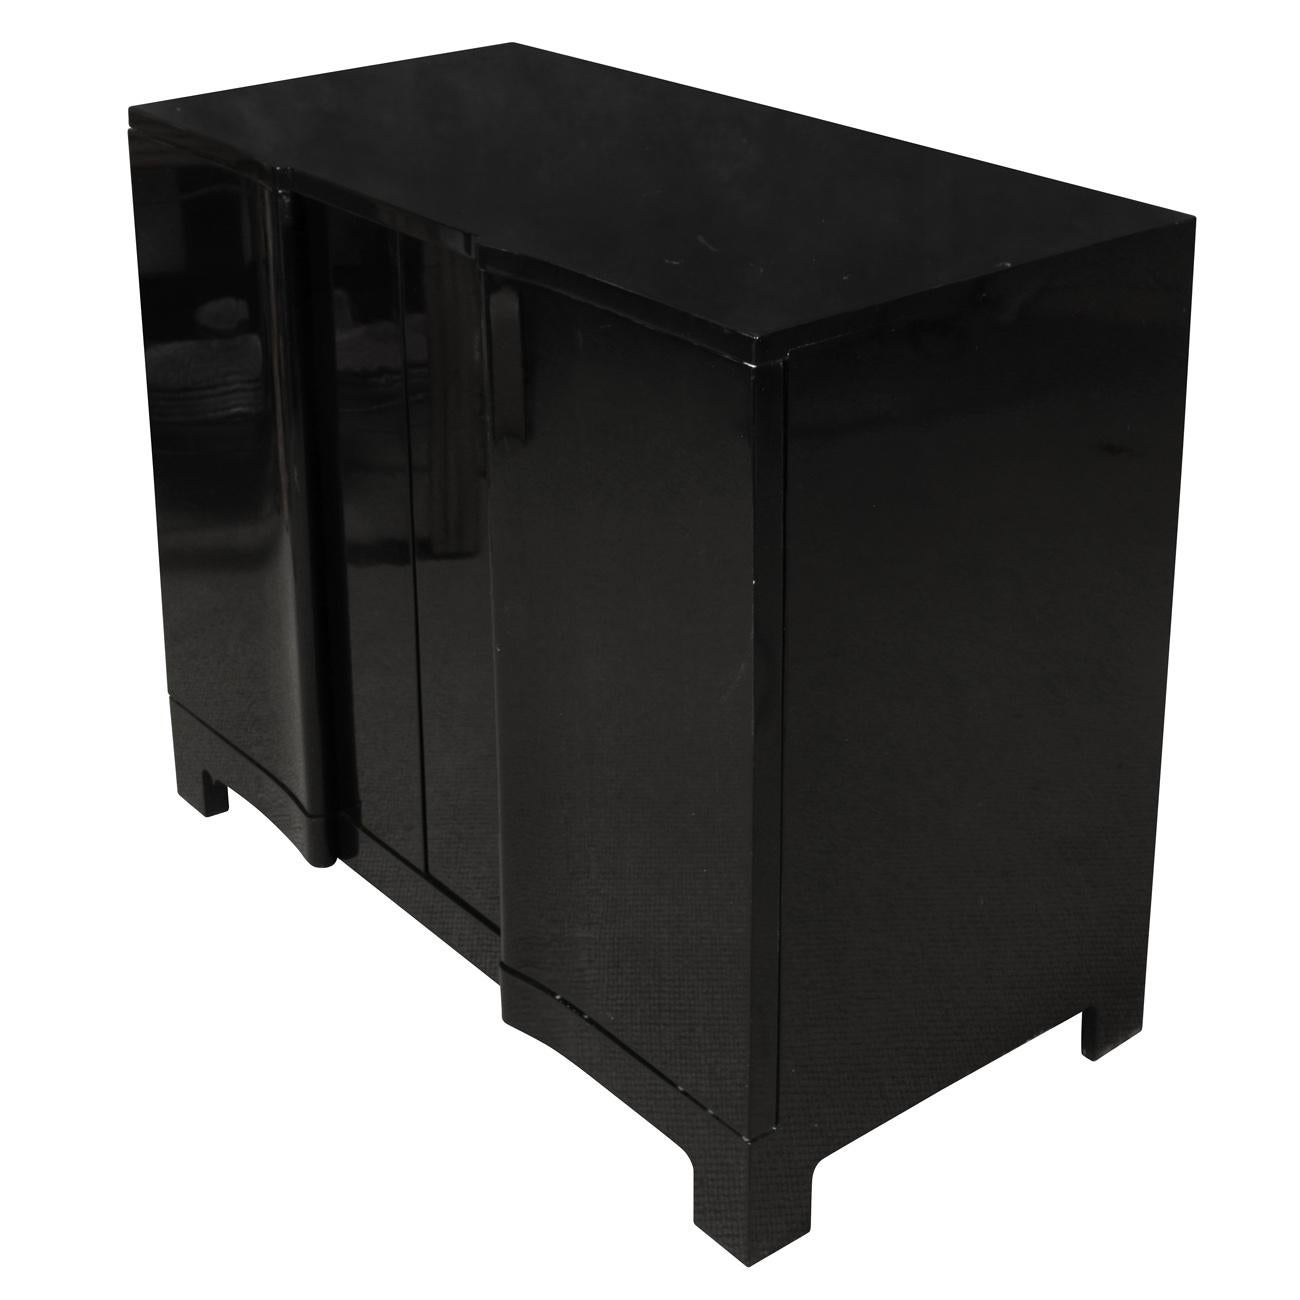 Moderner schwarz lackierter Schrank mit gewölbter Front, die als drei Türen erscheint. Der Schrank hat zwei Türen, die sich öffnen lassen, um drei Einlegeböden freizulegen.